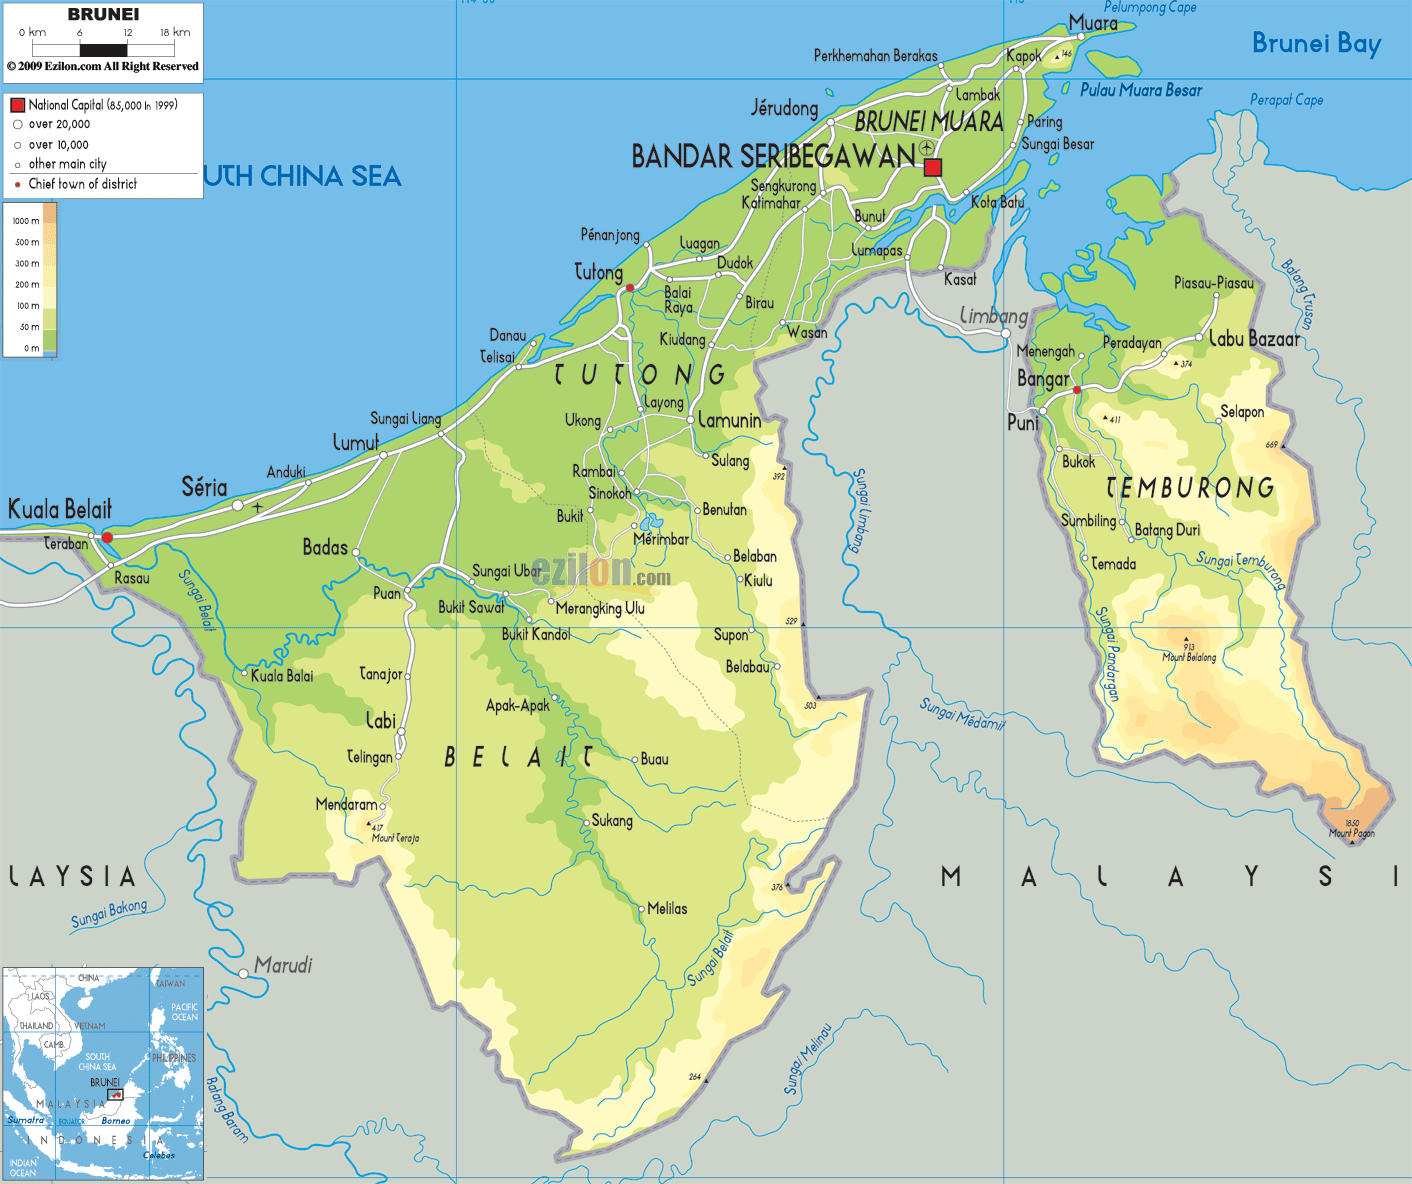 Brunei political map